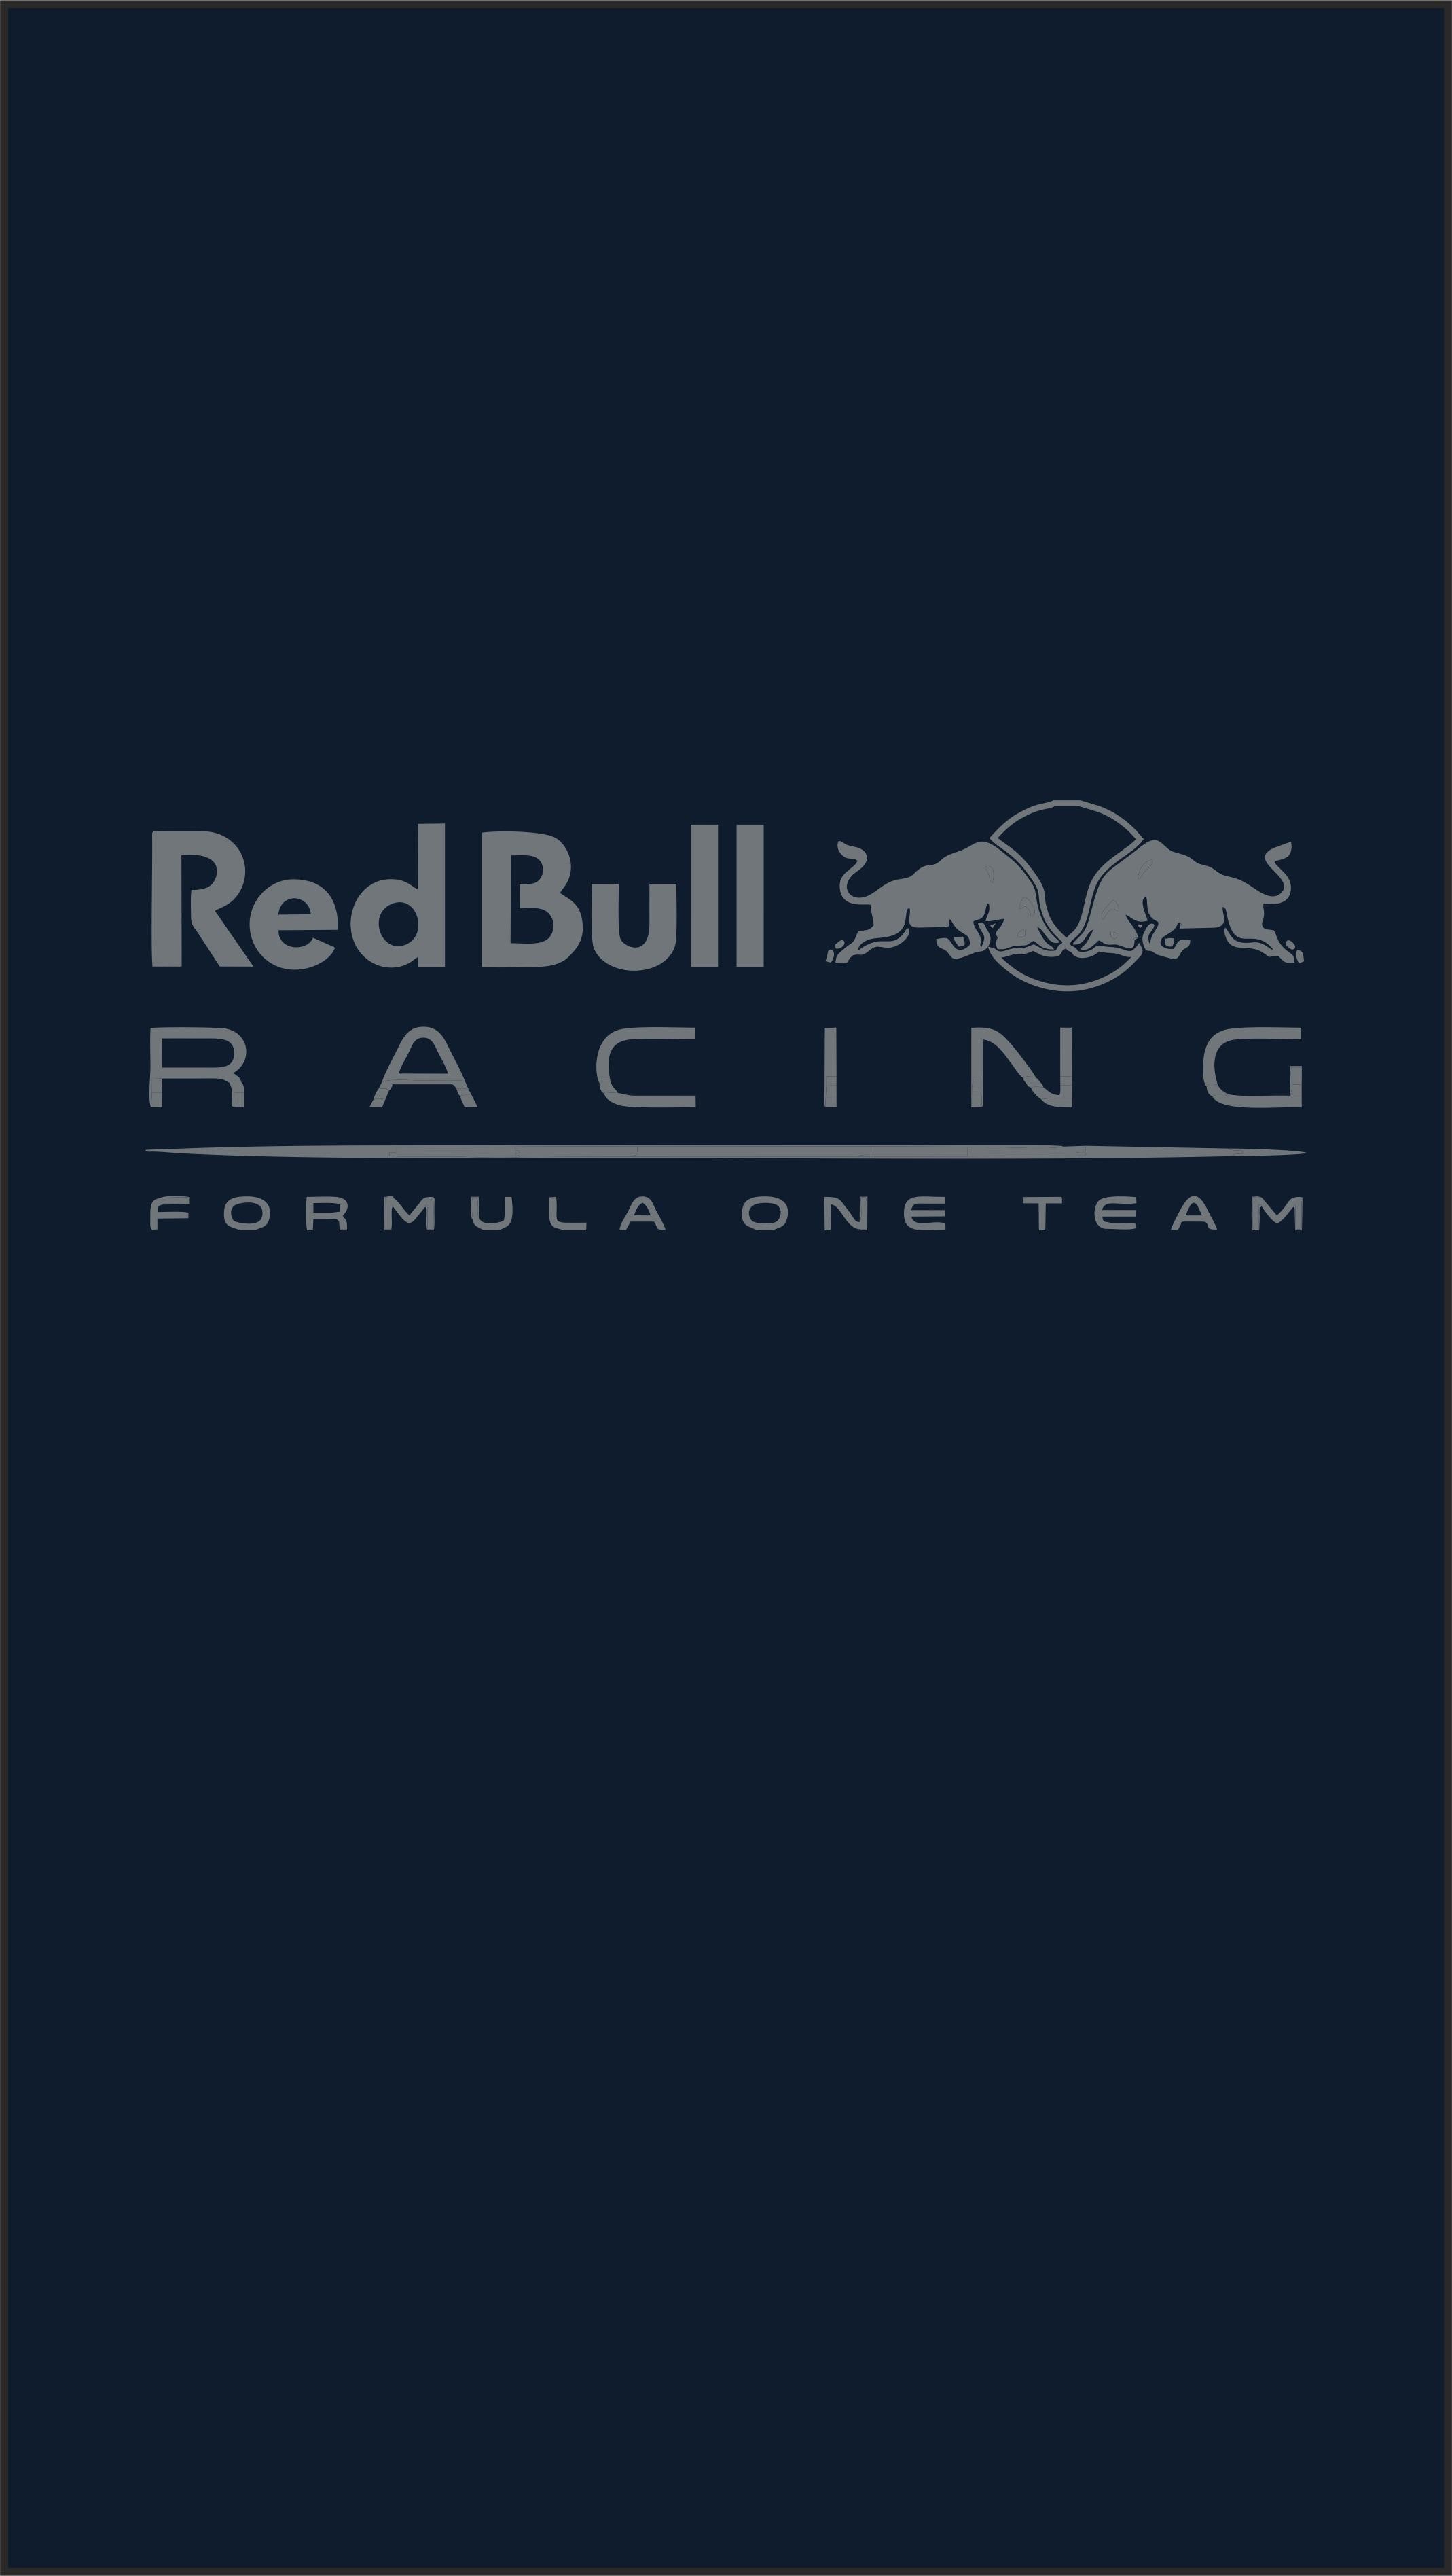 Red Bull Racing Wallpaper ·① WallpaperTag